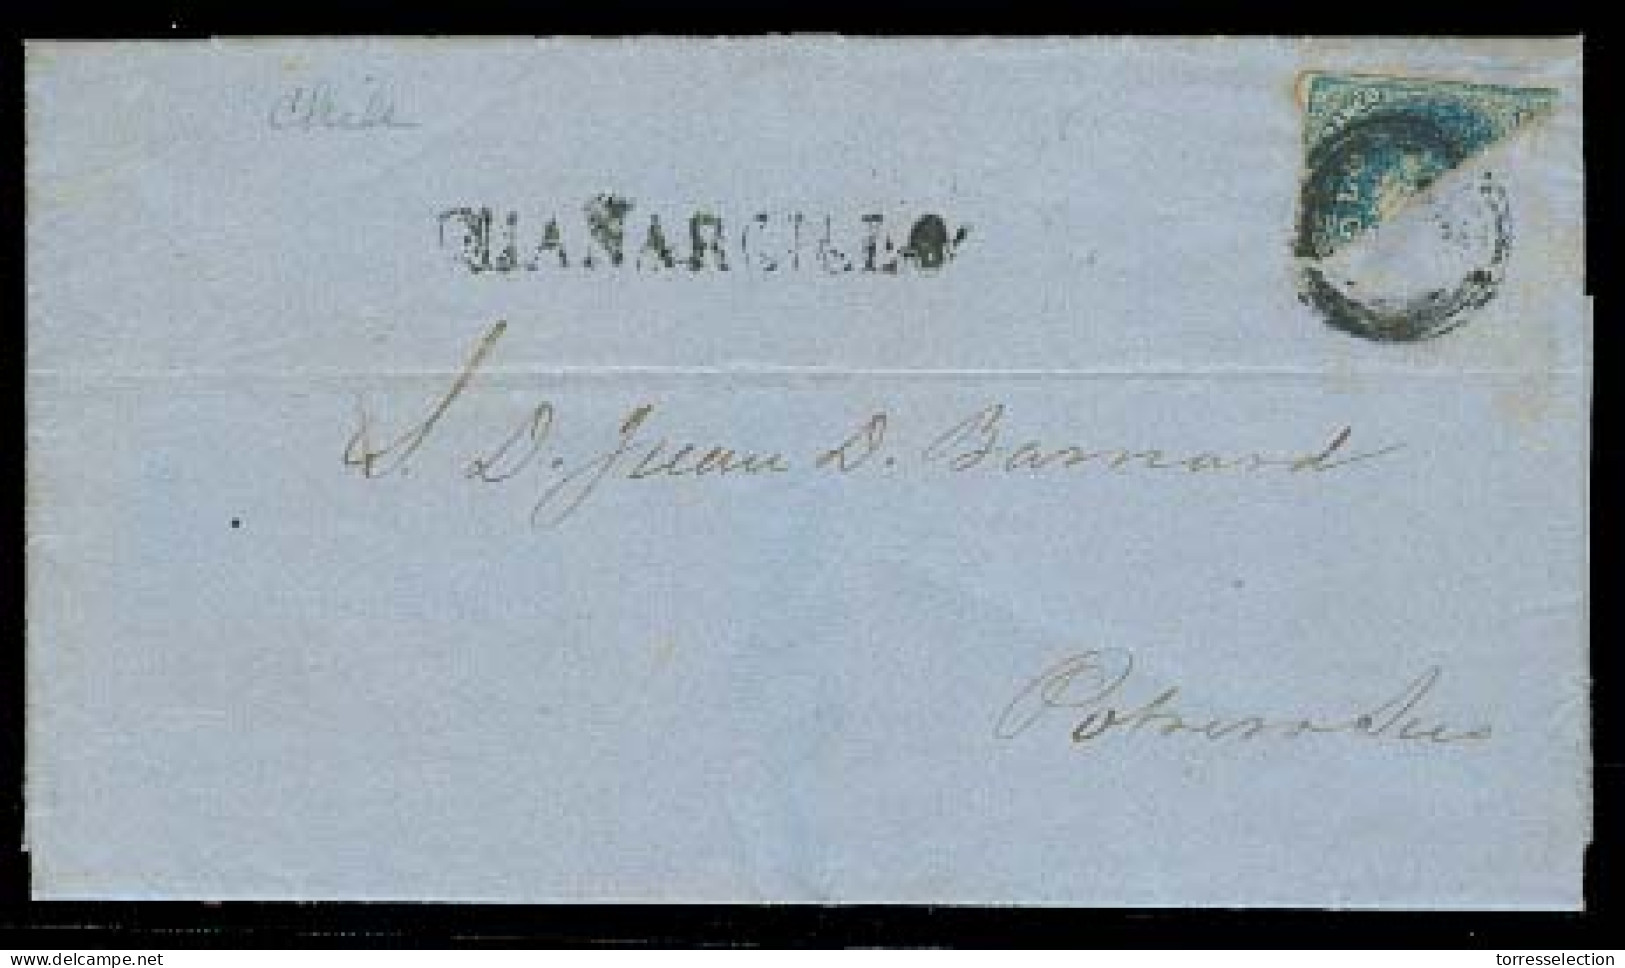 CHILE. 1859 (1 July). Chañarcillo - Potrero Sur. EL Full Contains Fkd 10c Bisected, Tied Grill + Stline Guañarcillo (xxx - Chile